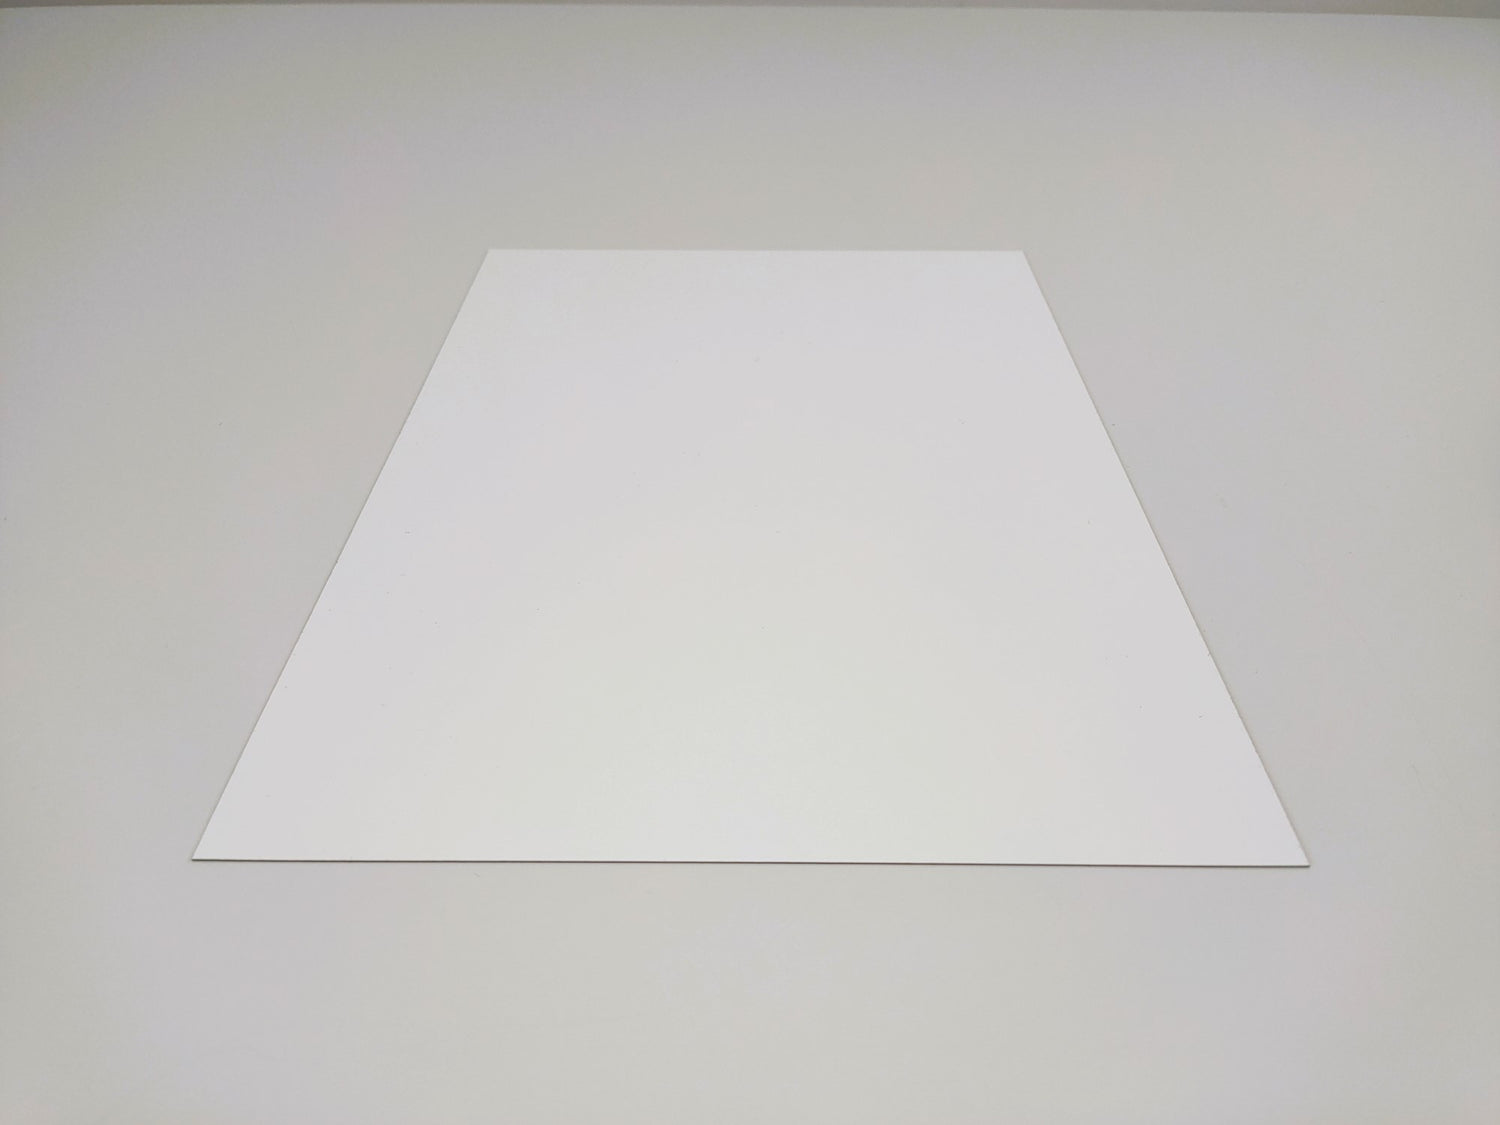 Feuille magnétique blanc, effaçable à sec - 0,6mm x 1m x 1,5m